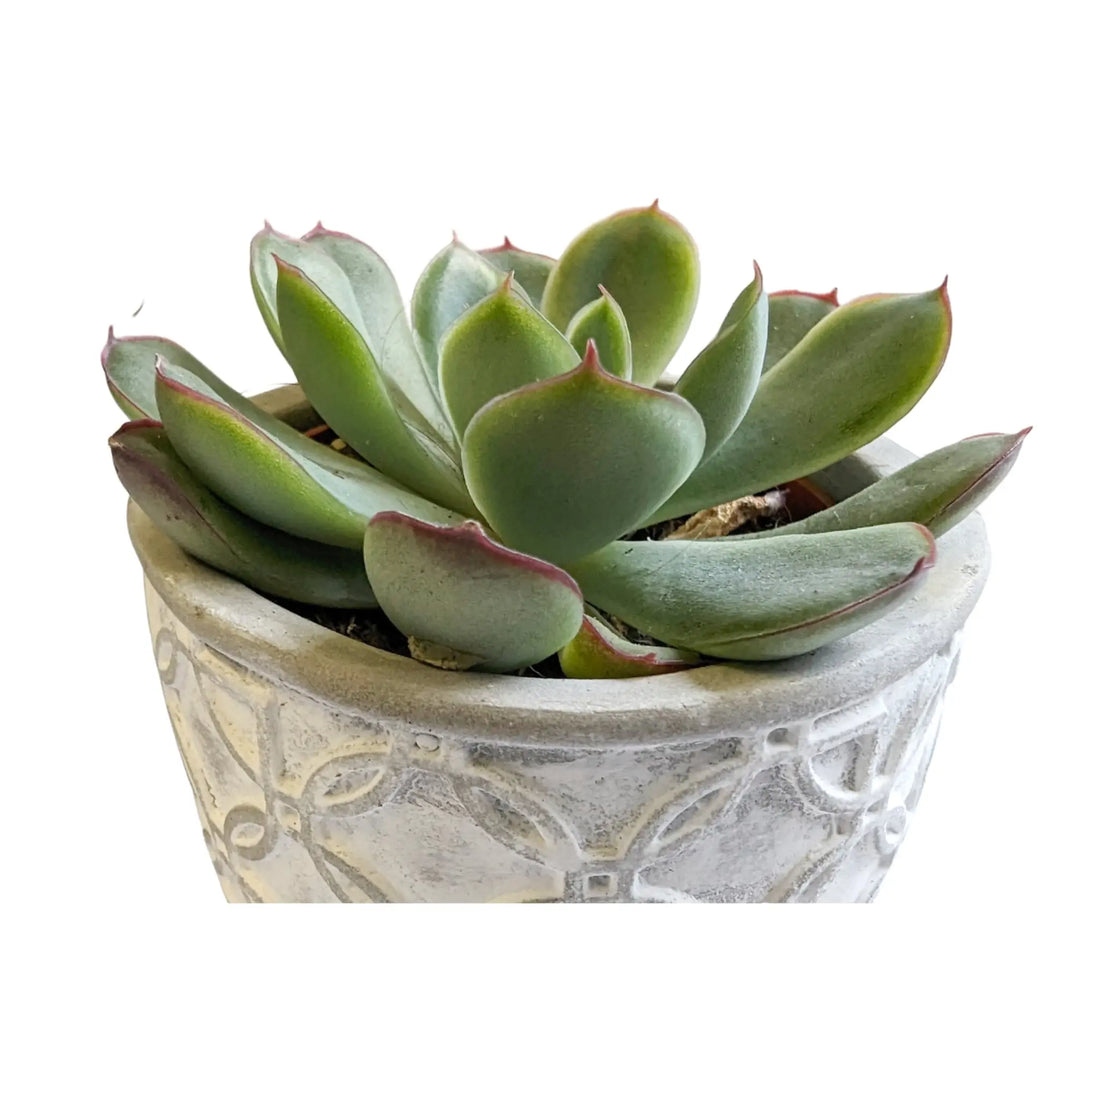 Succulent Mini Trip In Decorative Pot - 7cm Leaf Culture